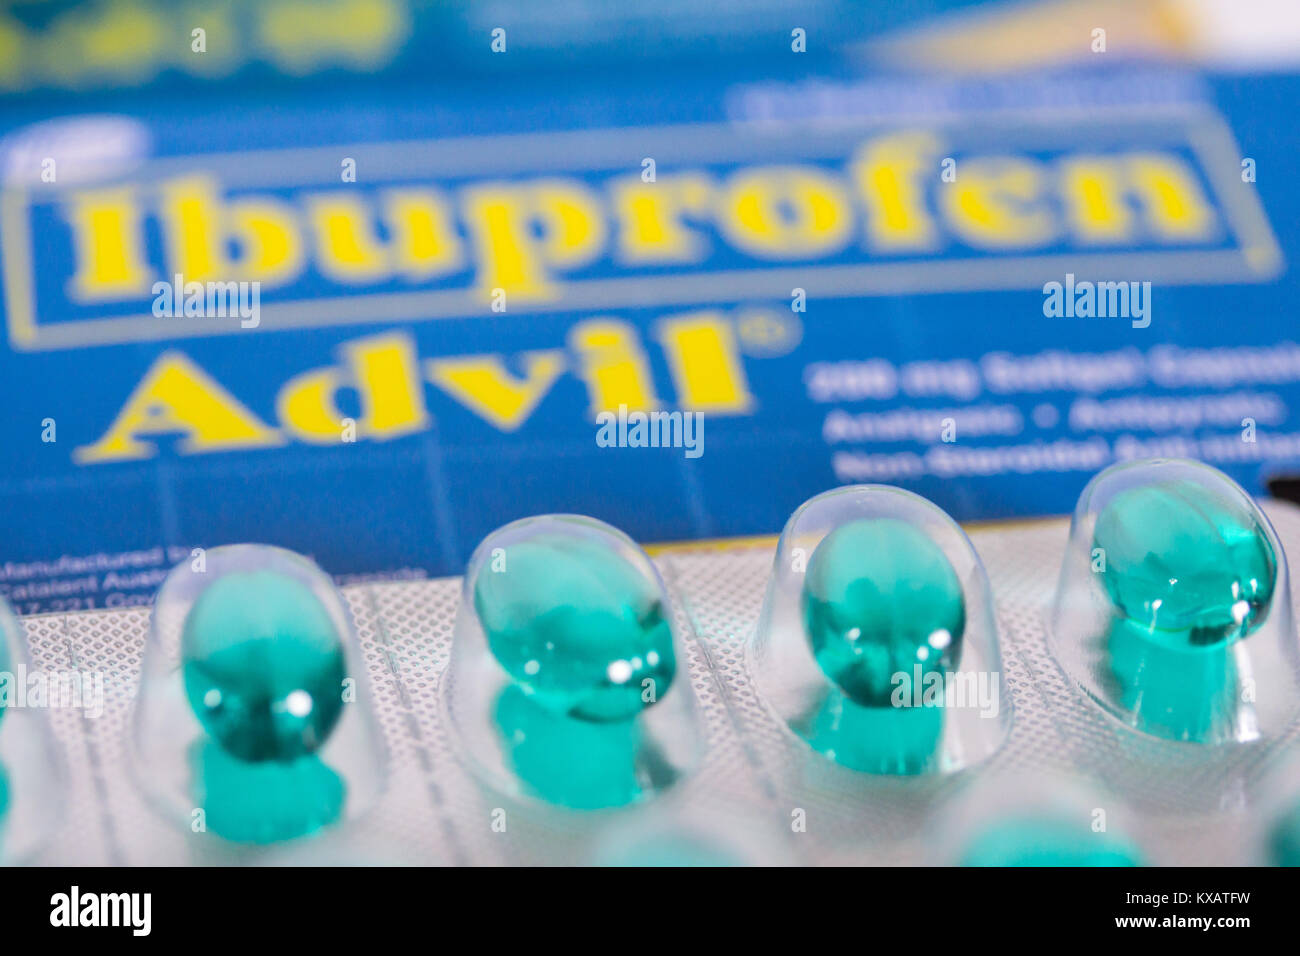 L'Advil vert capsules,(l'ibuprofène).Une étude récente publiée dans la  revue Proceedings of the National Academy of Sciences affirme que  l'Ibuprofène(Advil et Motrin , deux produits de marque),a un impact négatif  sur les testicules